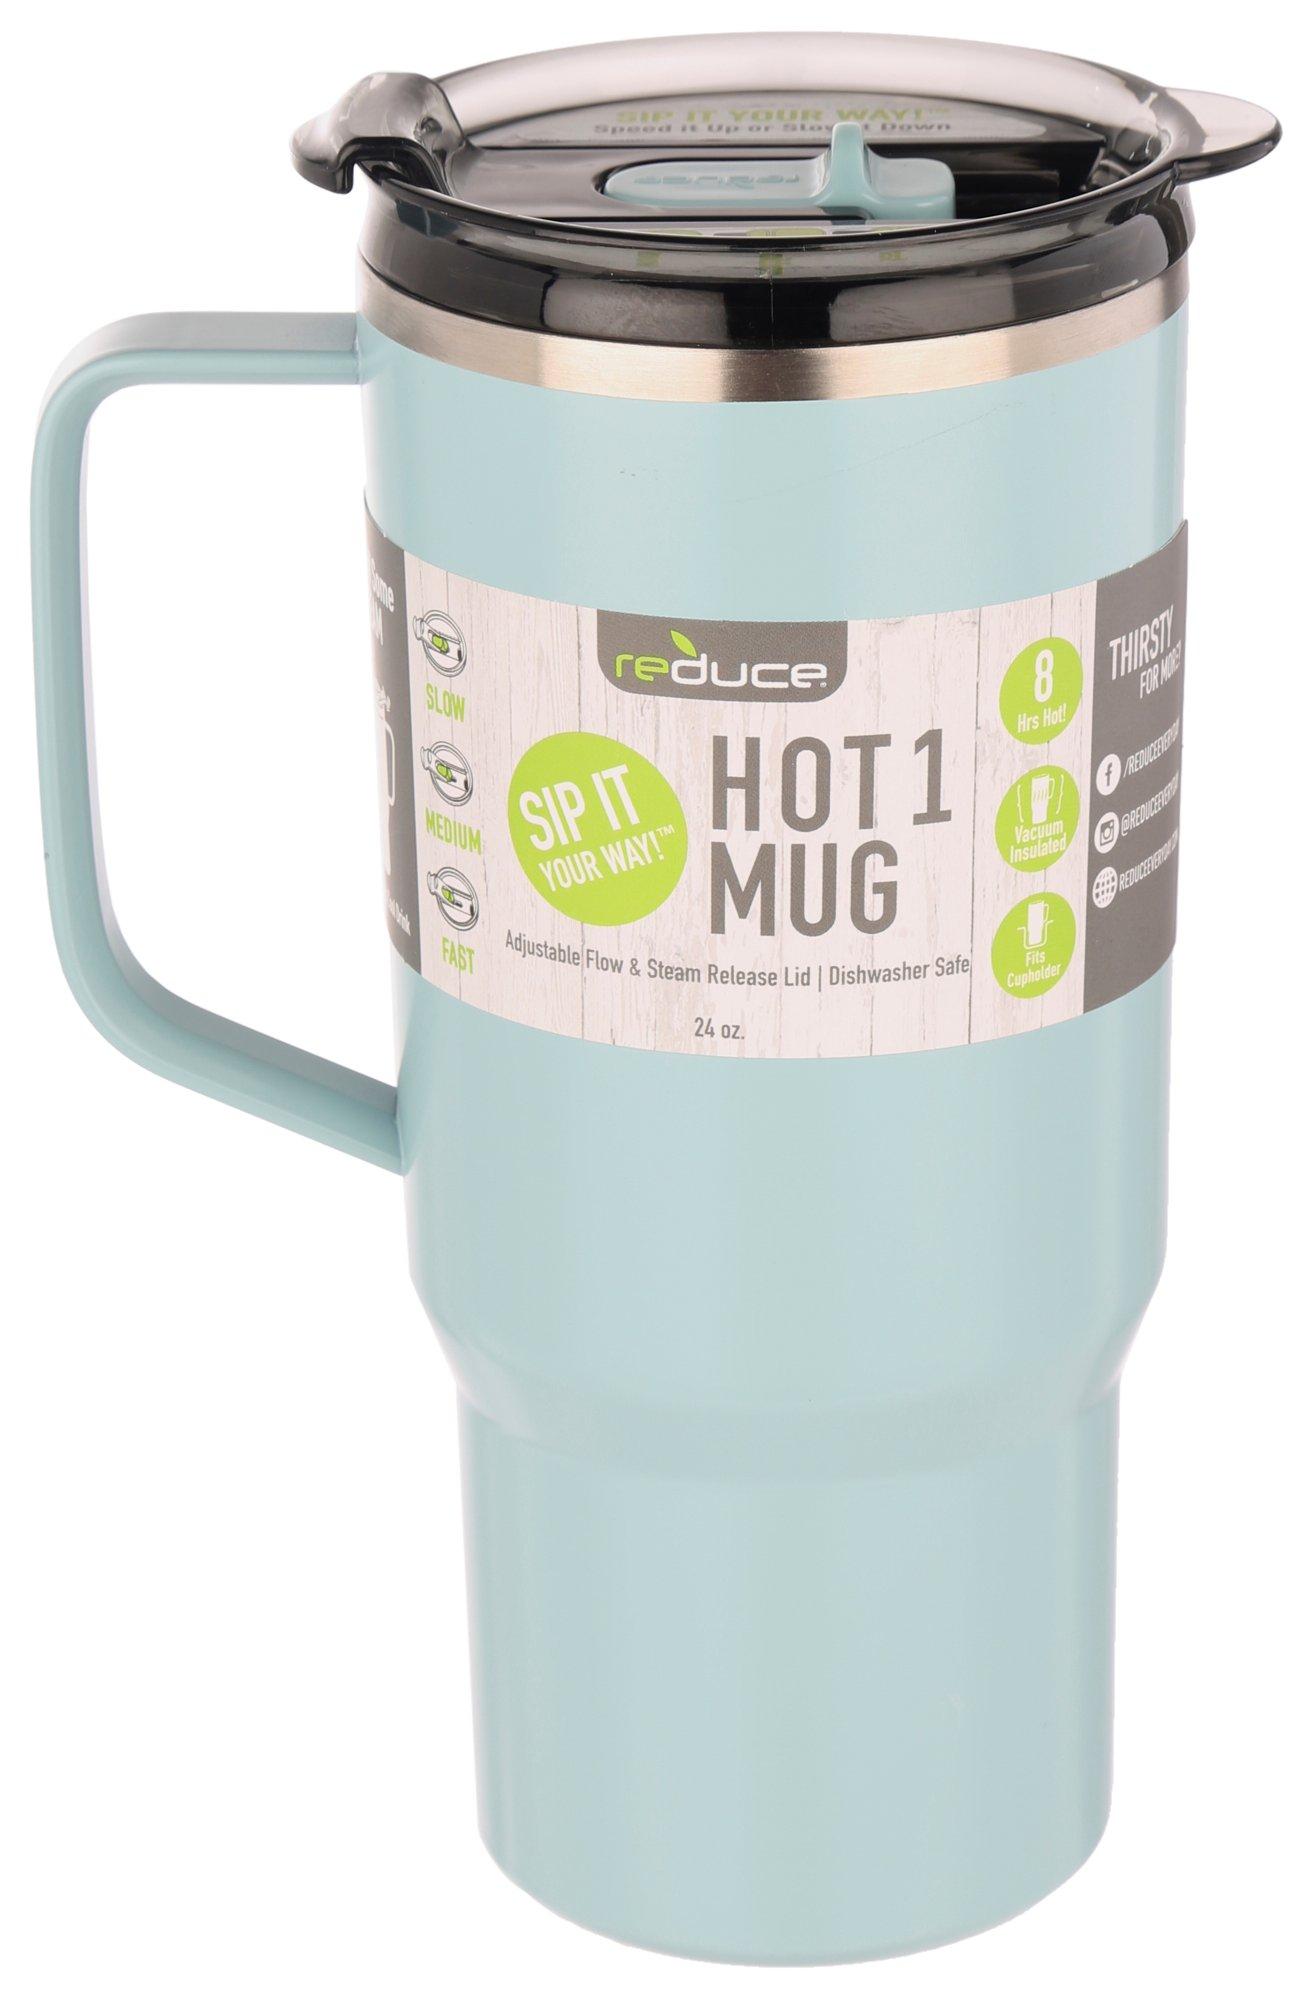 Reduce 24oz Hot Mug